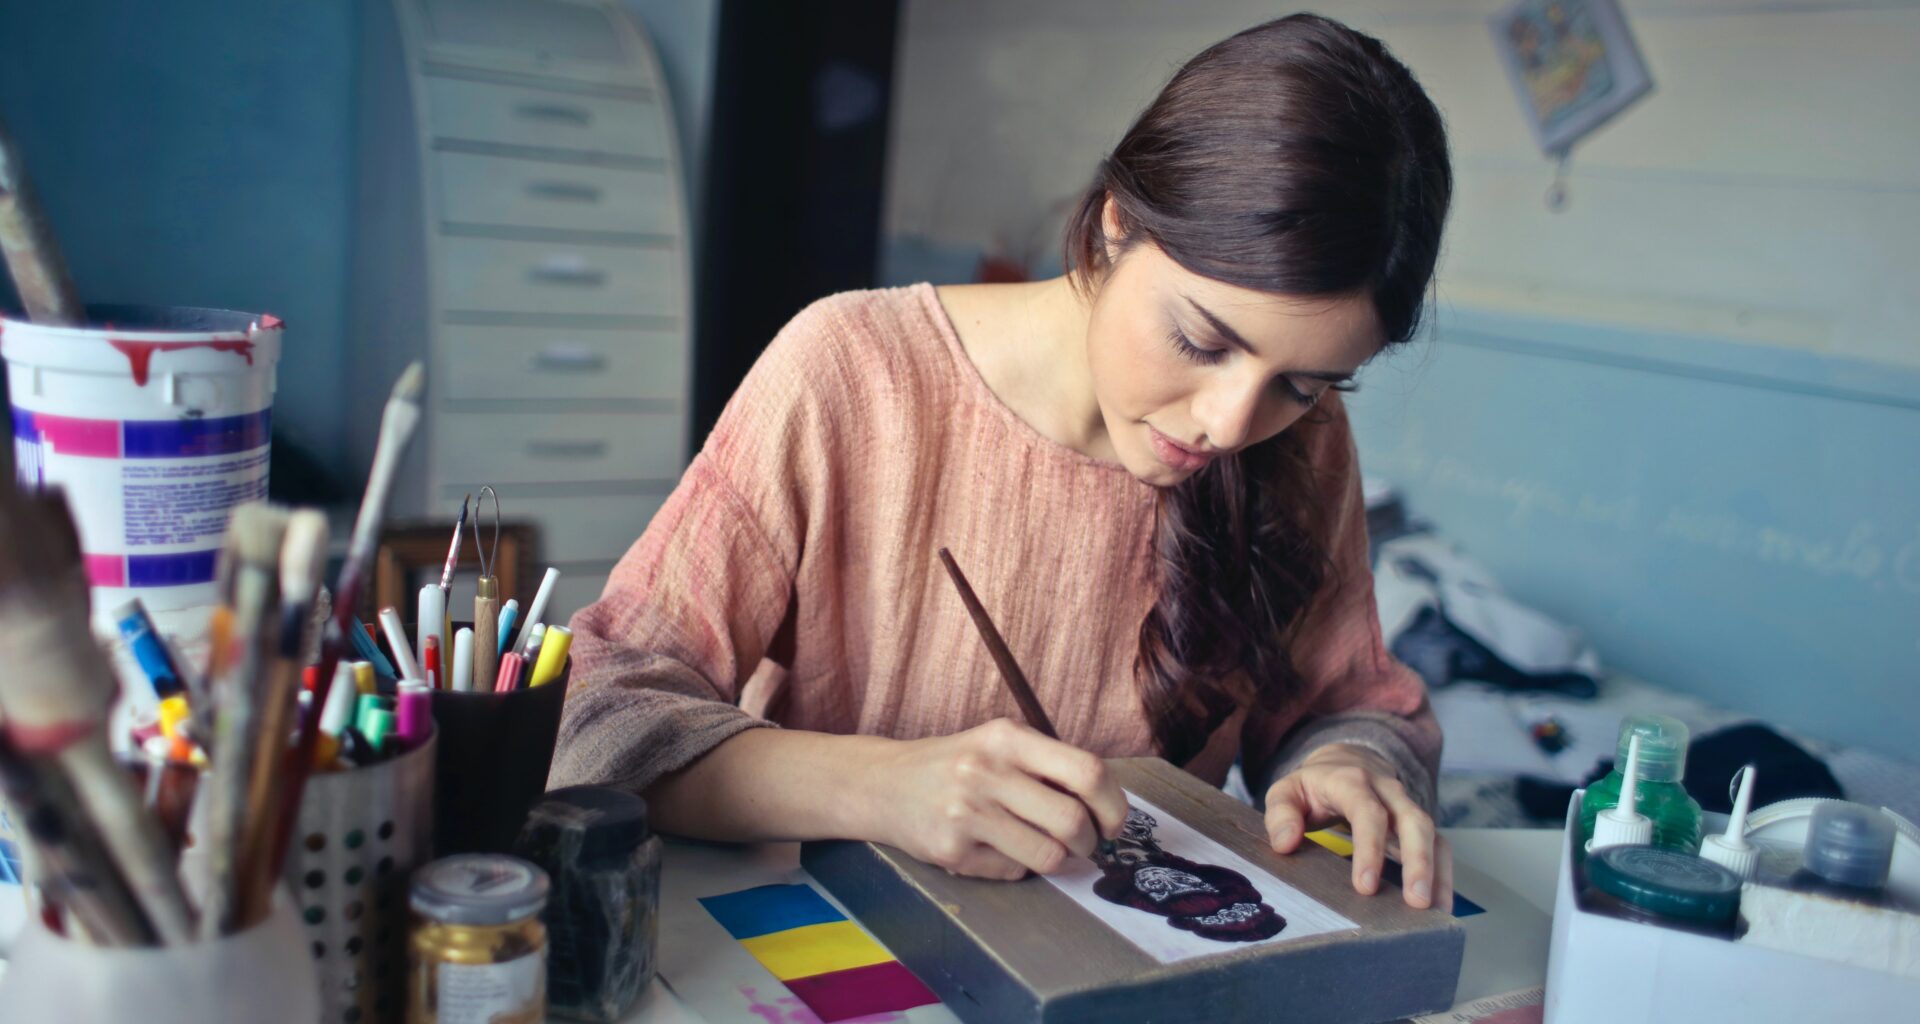 mujer de cabello largo y blusa rosa pinta con un pincel sobre un lienzo, a su lado hay colore sy pinturas dentro de un bote; diseño gráfico sustentable